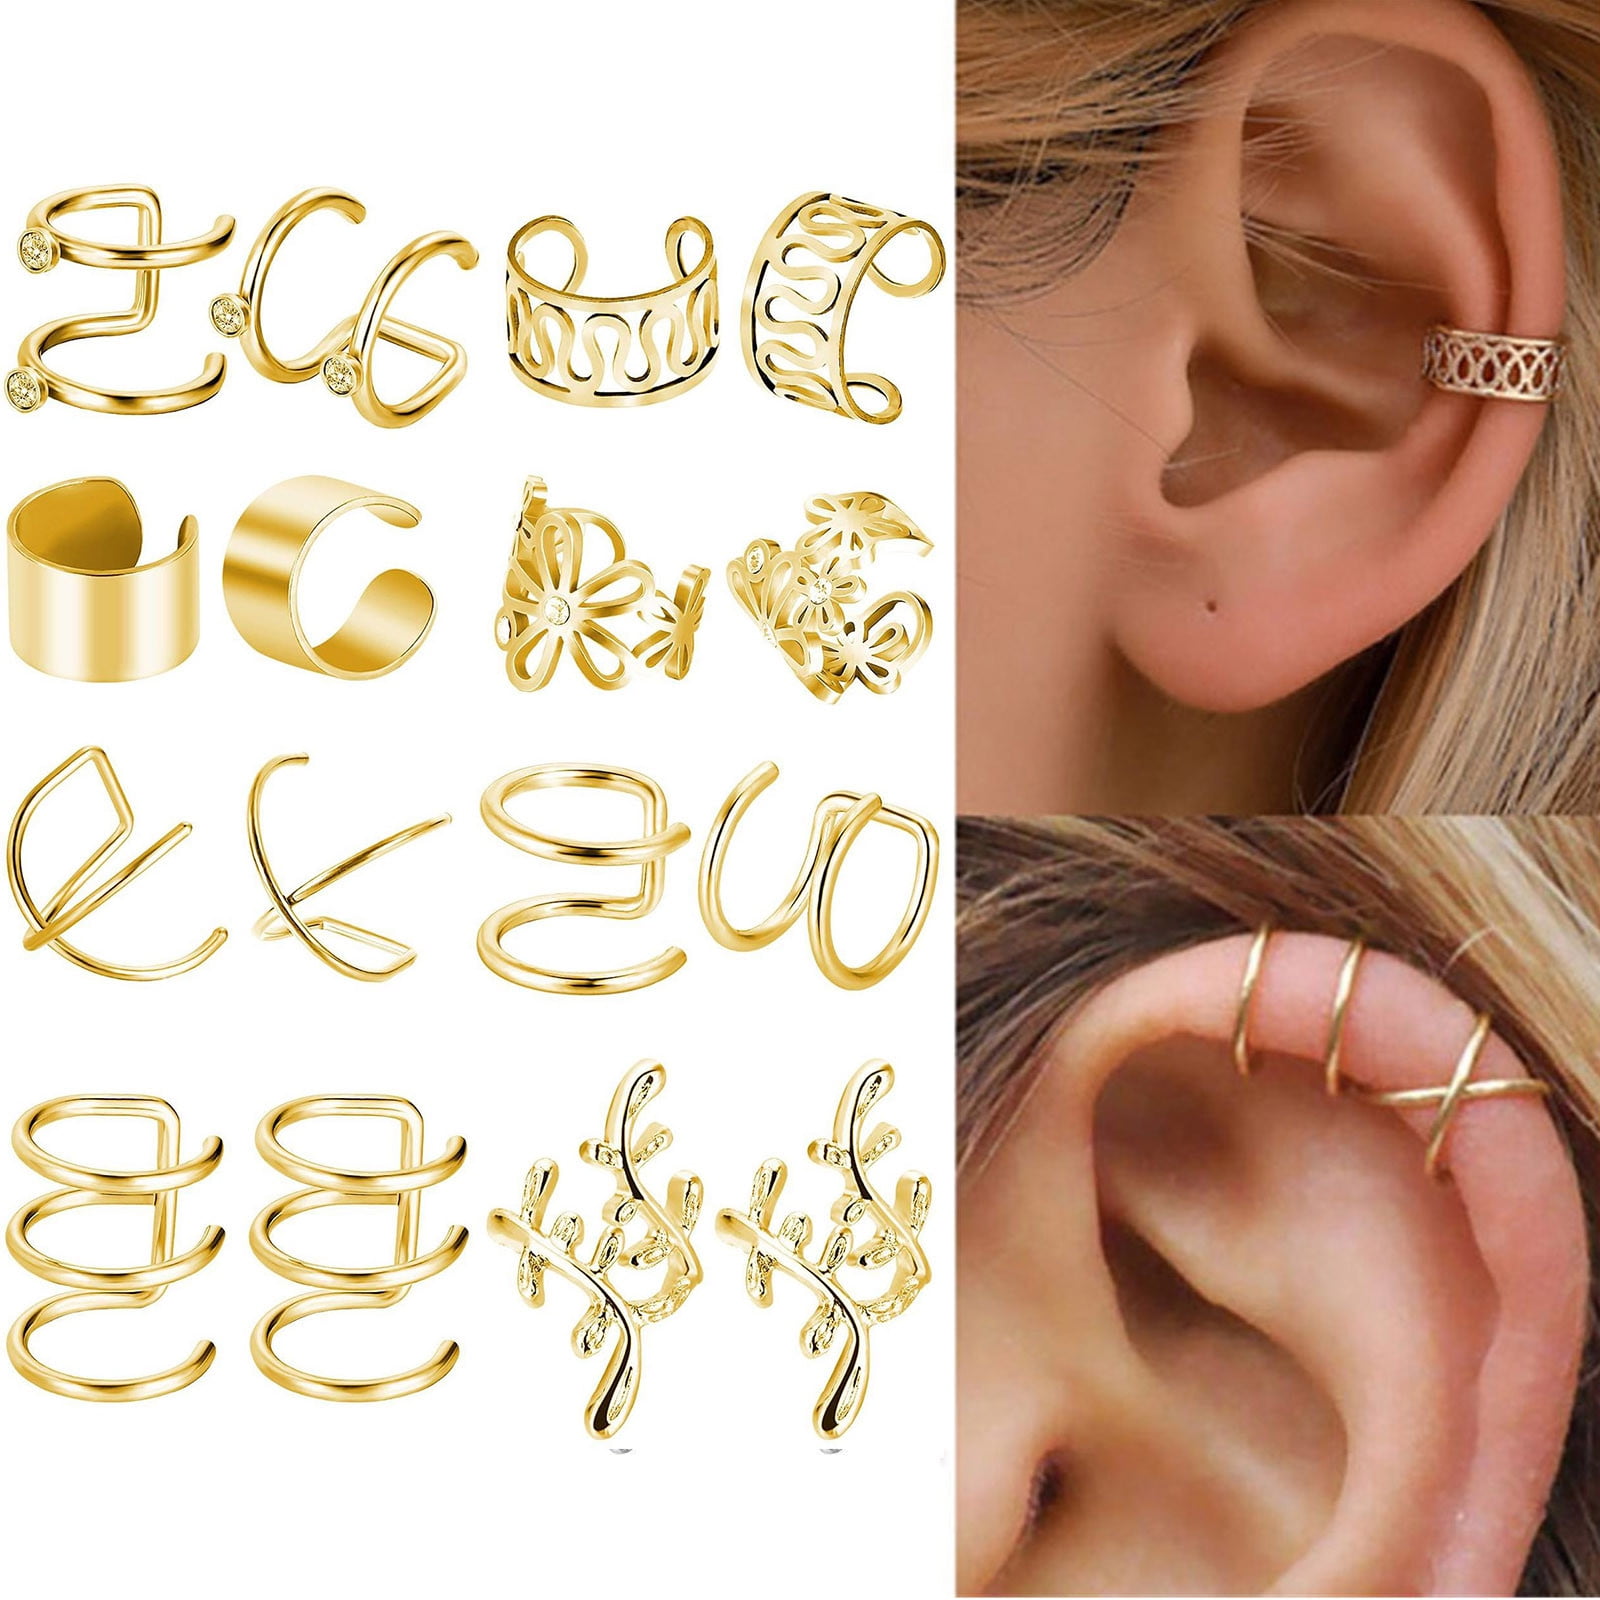 Earrings for men | 633 Styles for men in stock